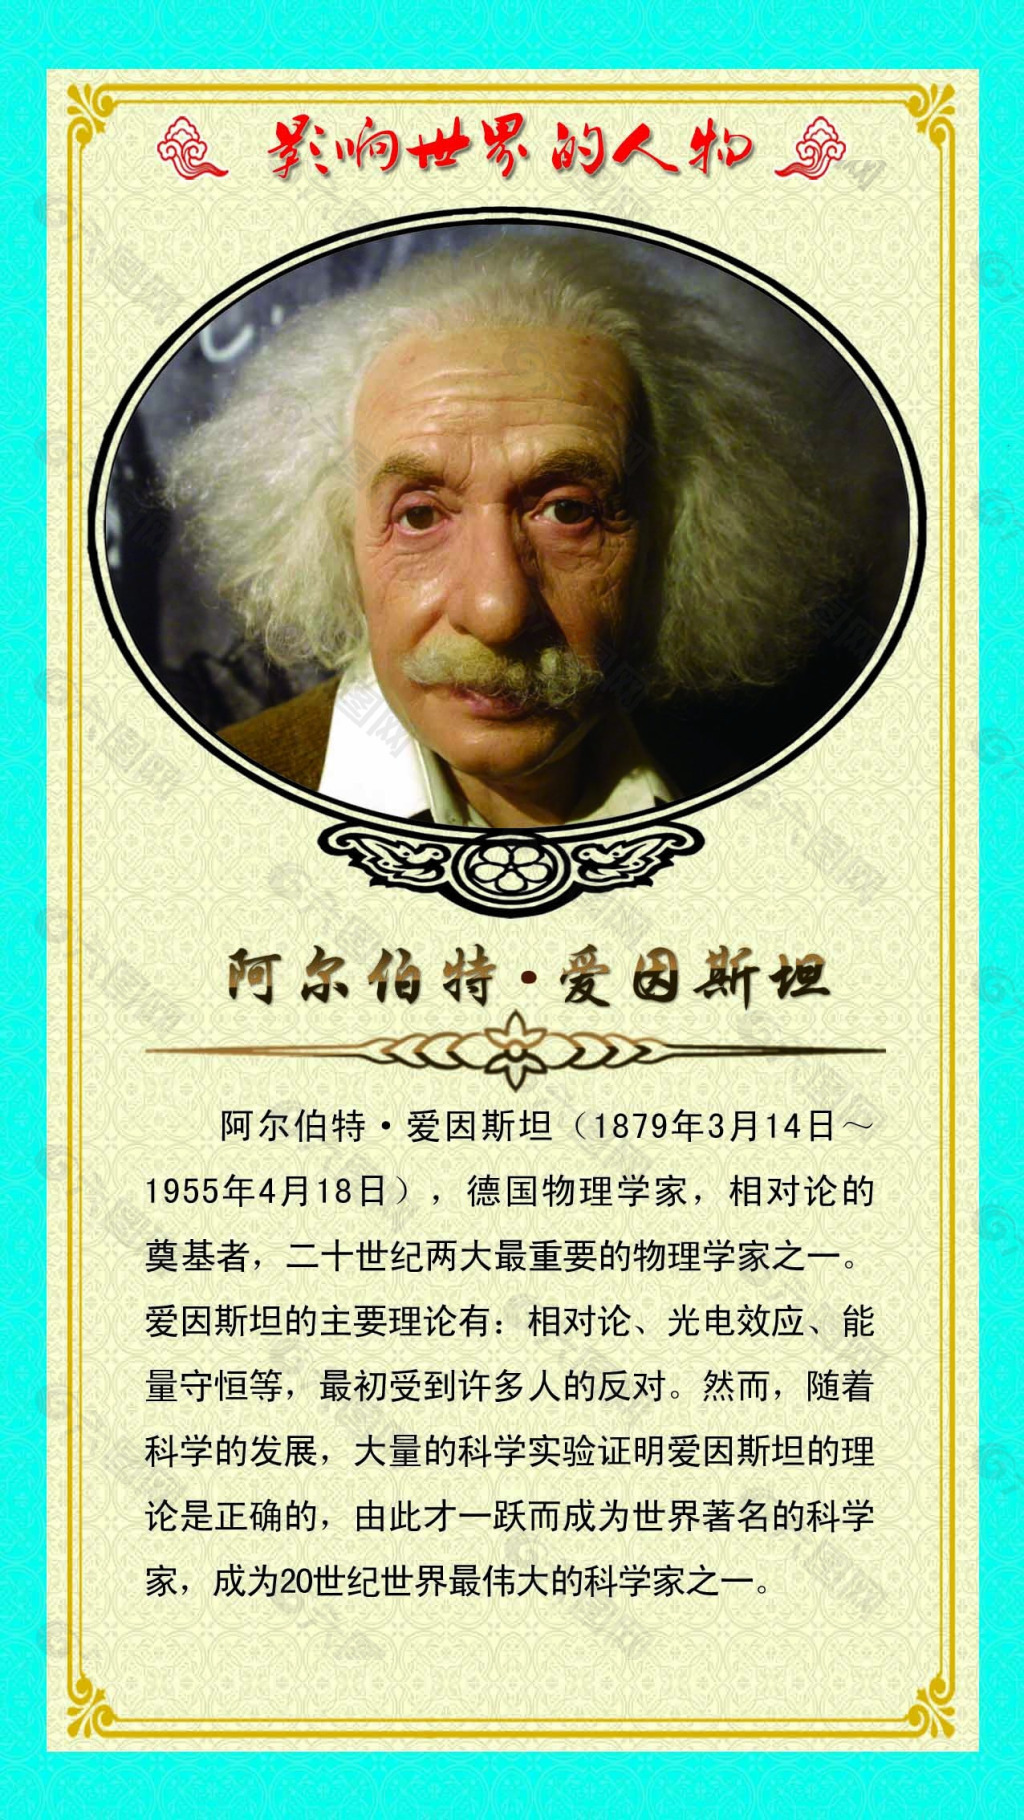 爱因斯坦微信图片